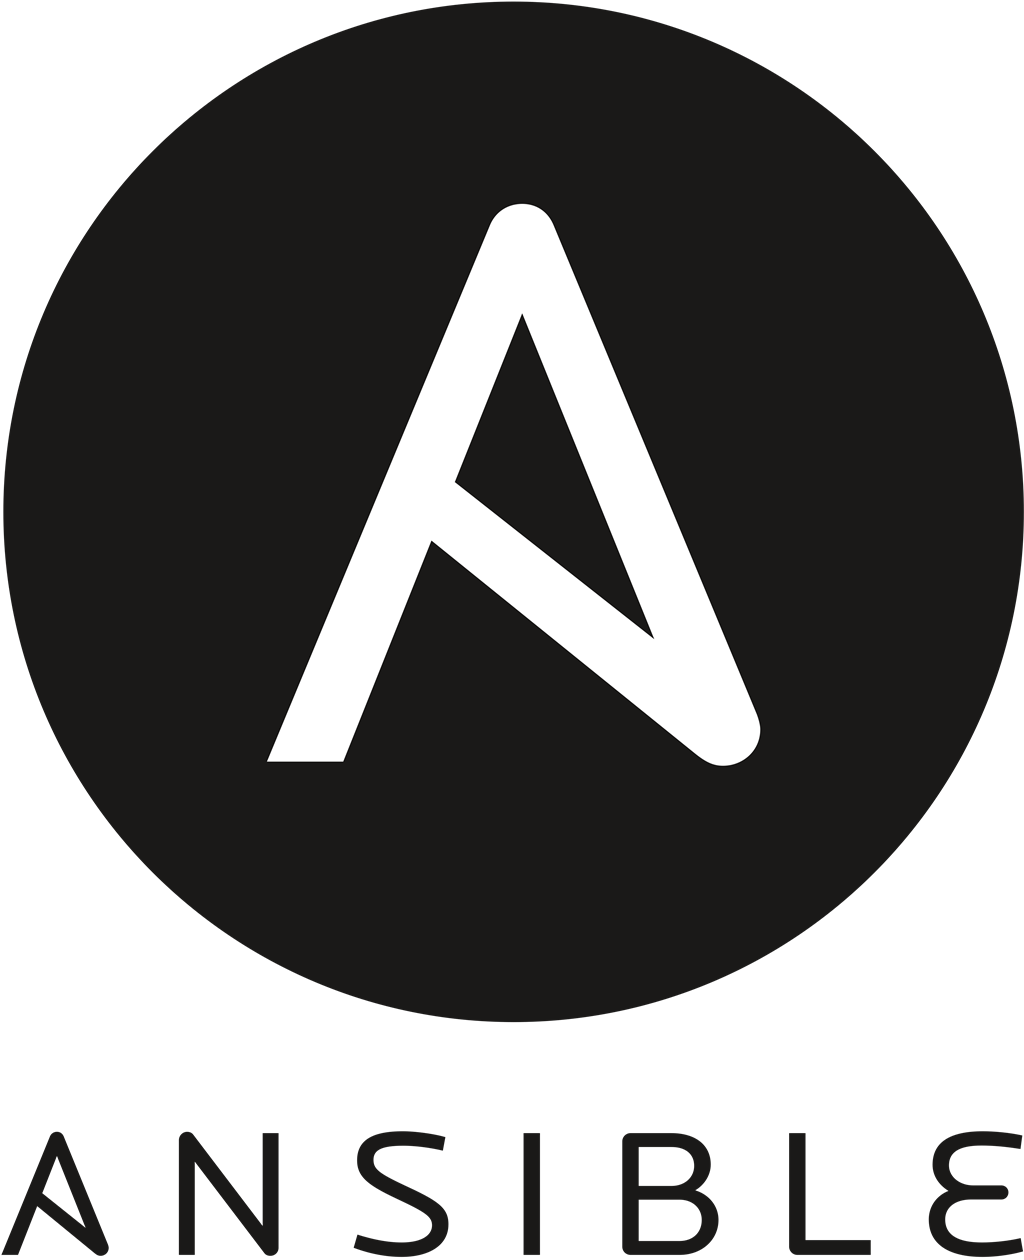 Ansible logotype, transparent .png, medium, large